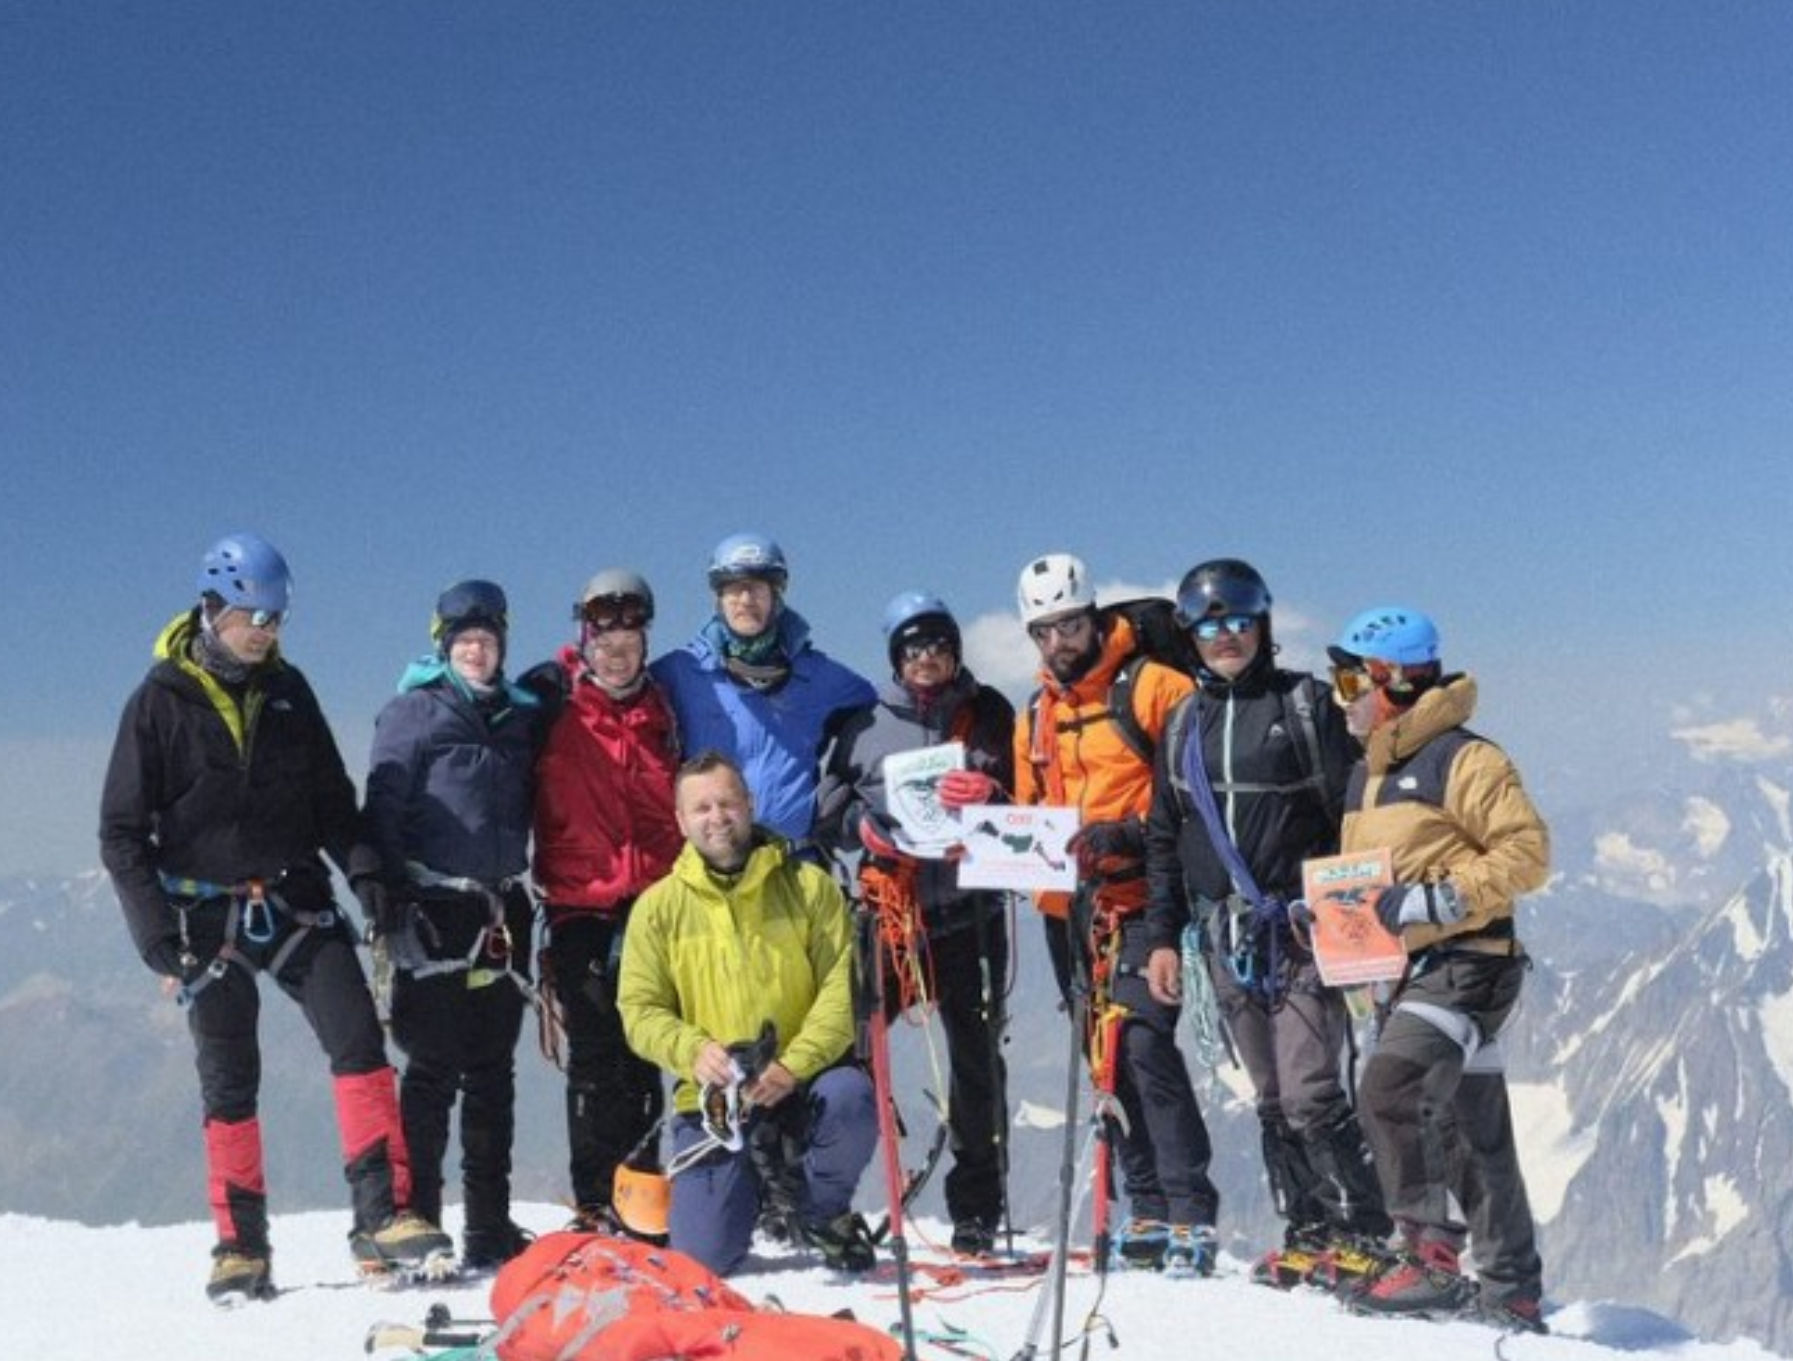 Χαλκίδα: Ξεκινά συναντήσεις και ενημερώσεις ο ορειβατικός σύλλογος